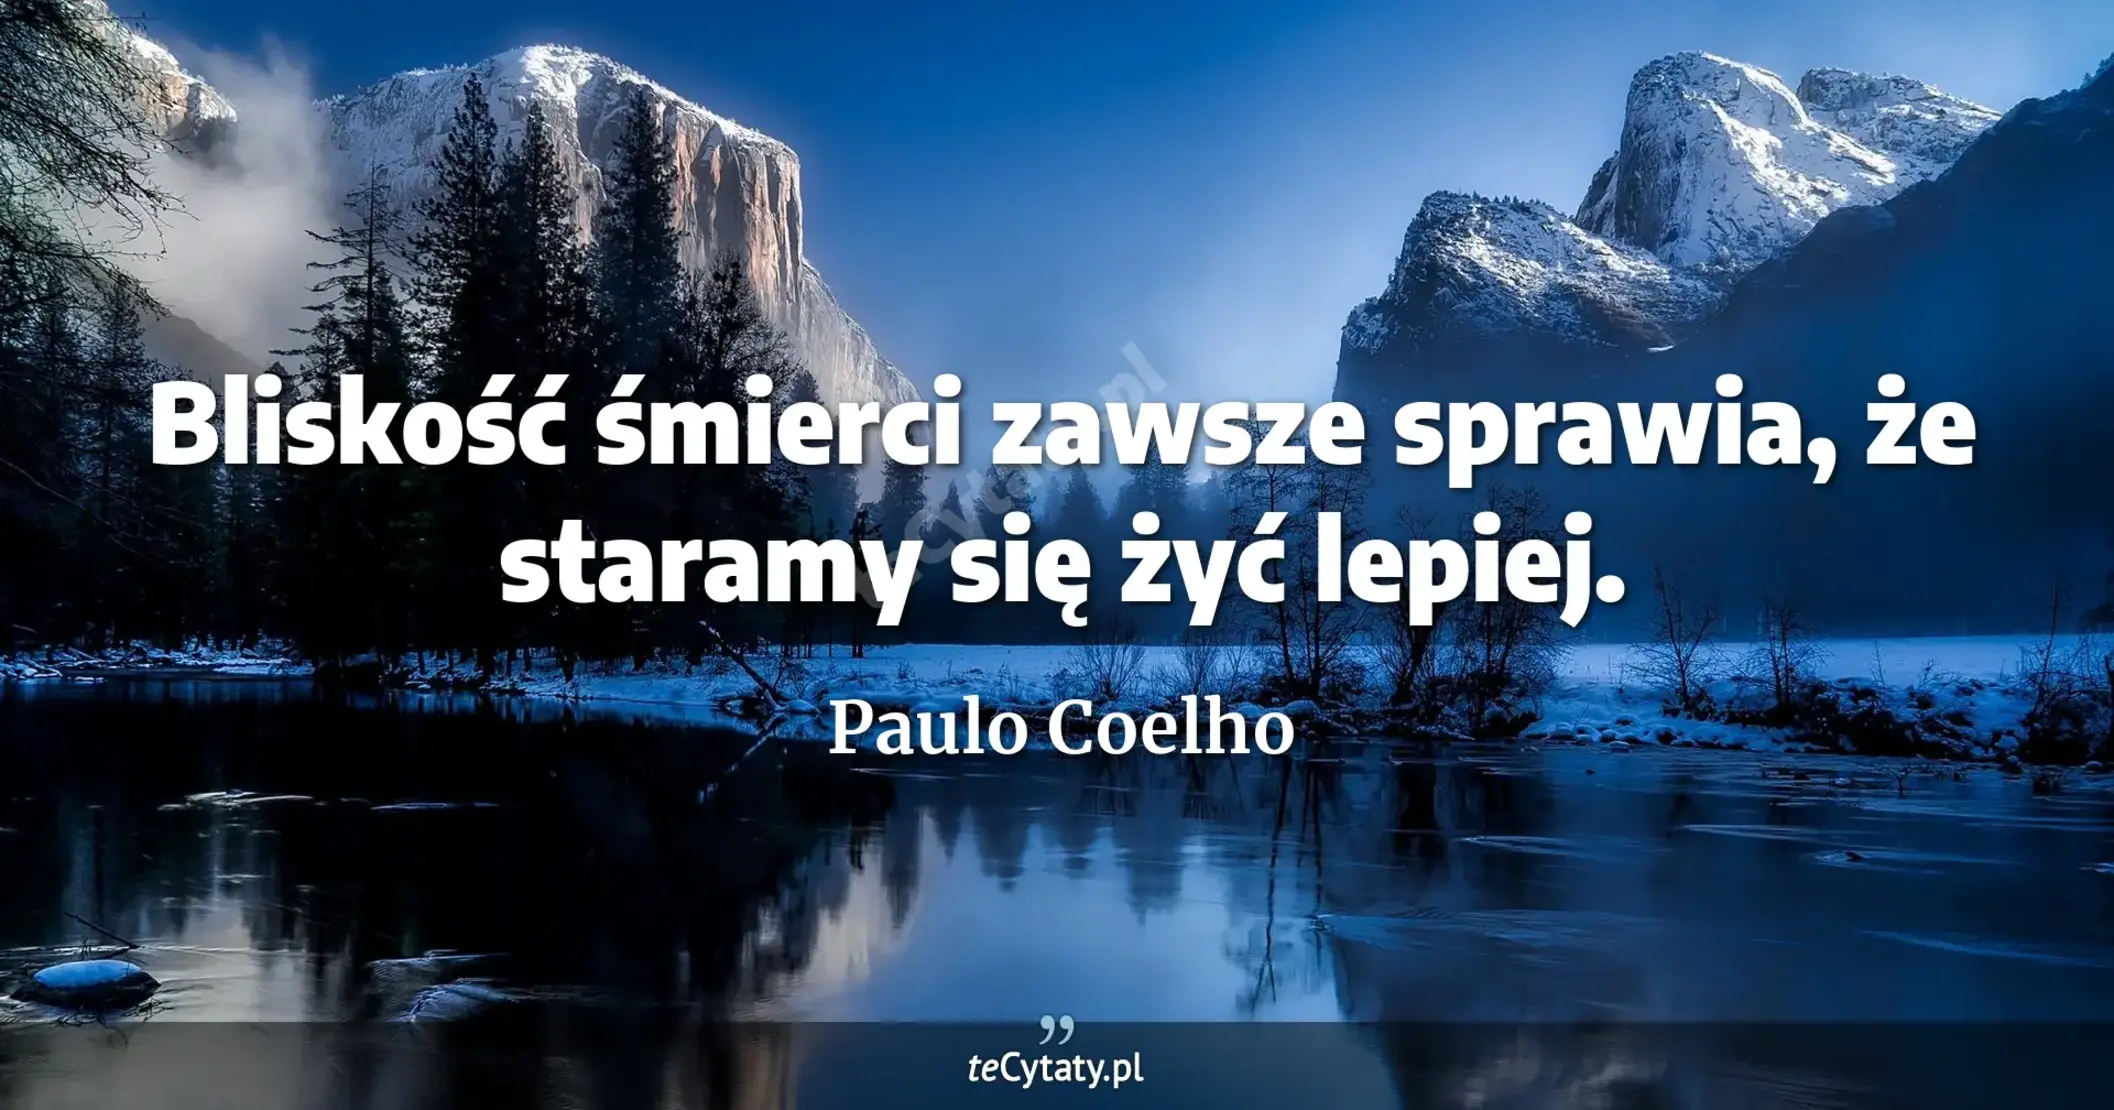 Bliskość śmierci zawsze sprawia, że staramy się żyć lepiej. - Paulo Coelho